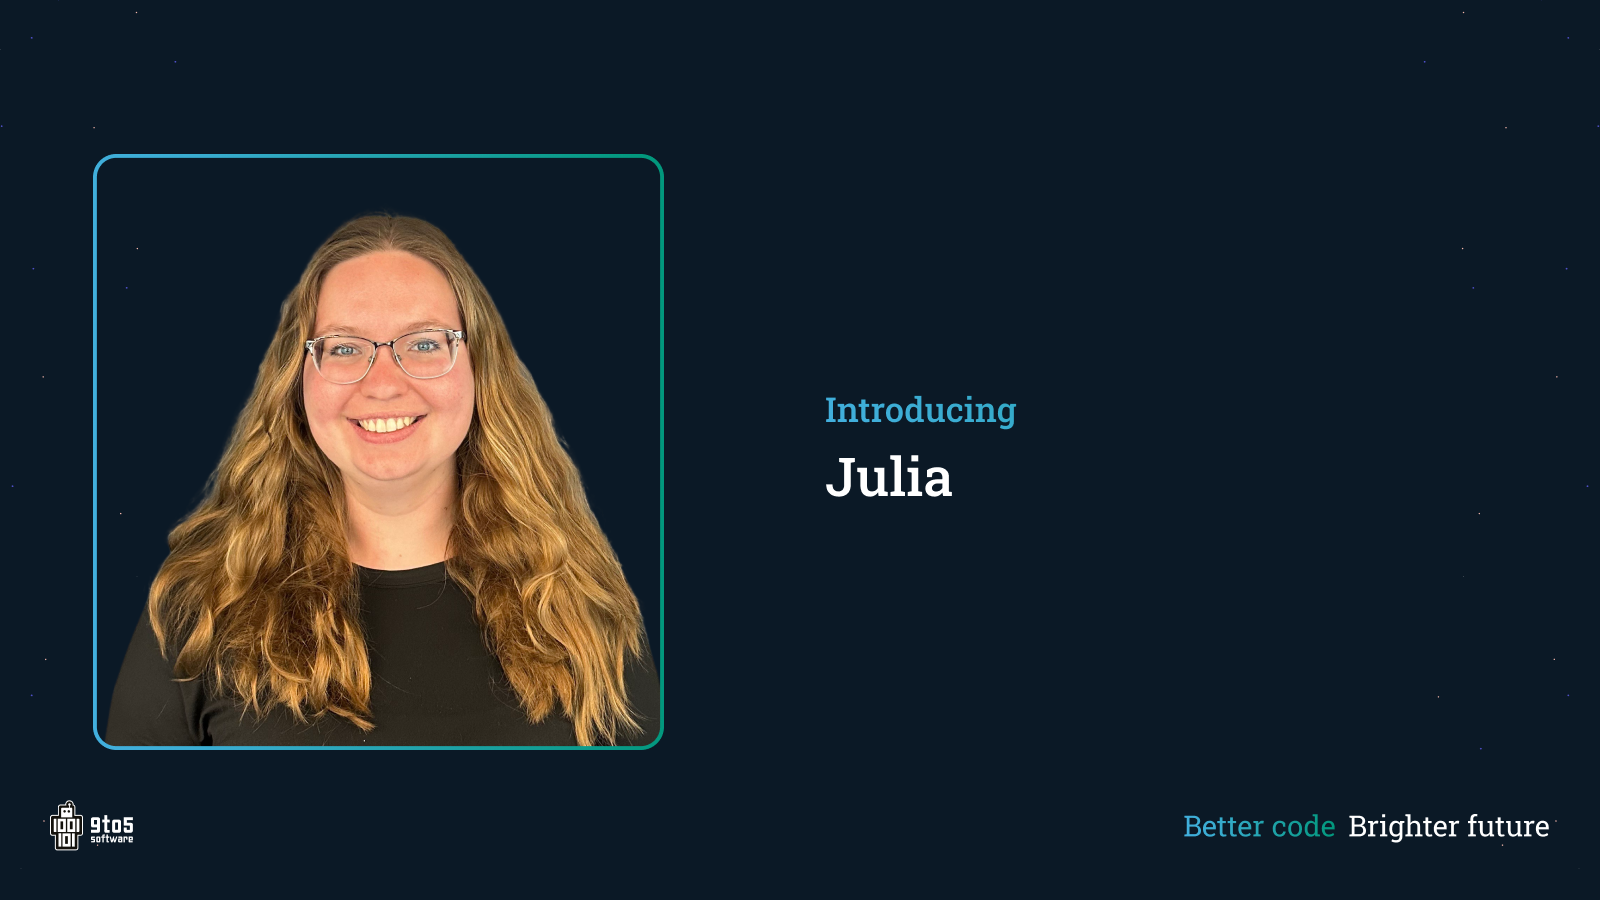 Even voorstellen... Julia - Een nieuwe medewerker bij 9to5 software